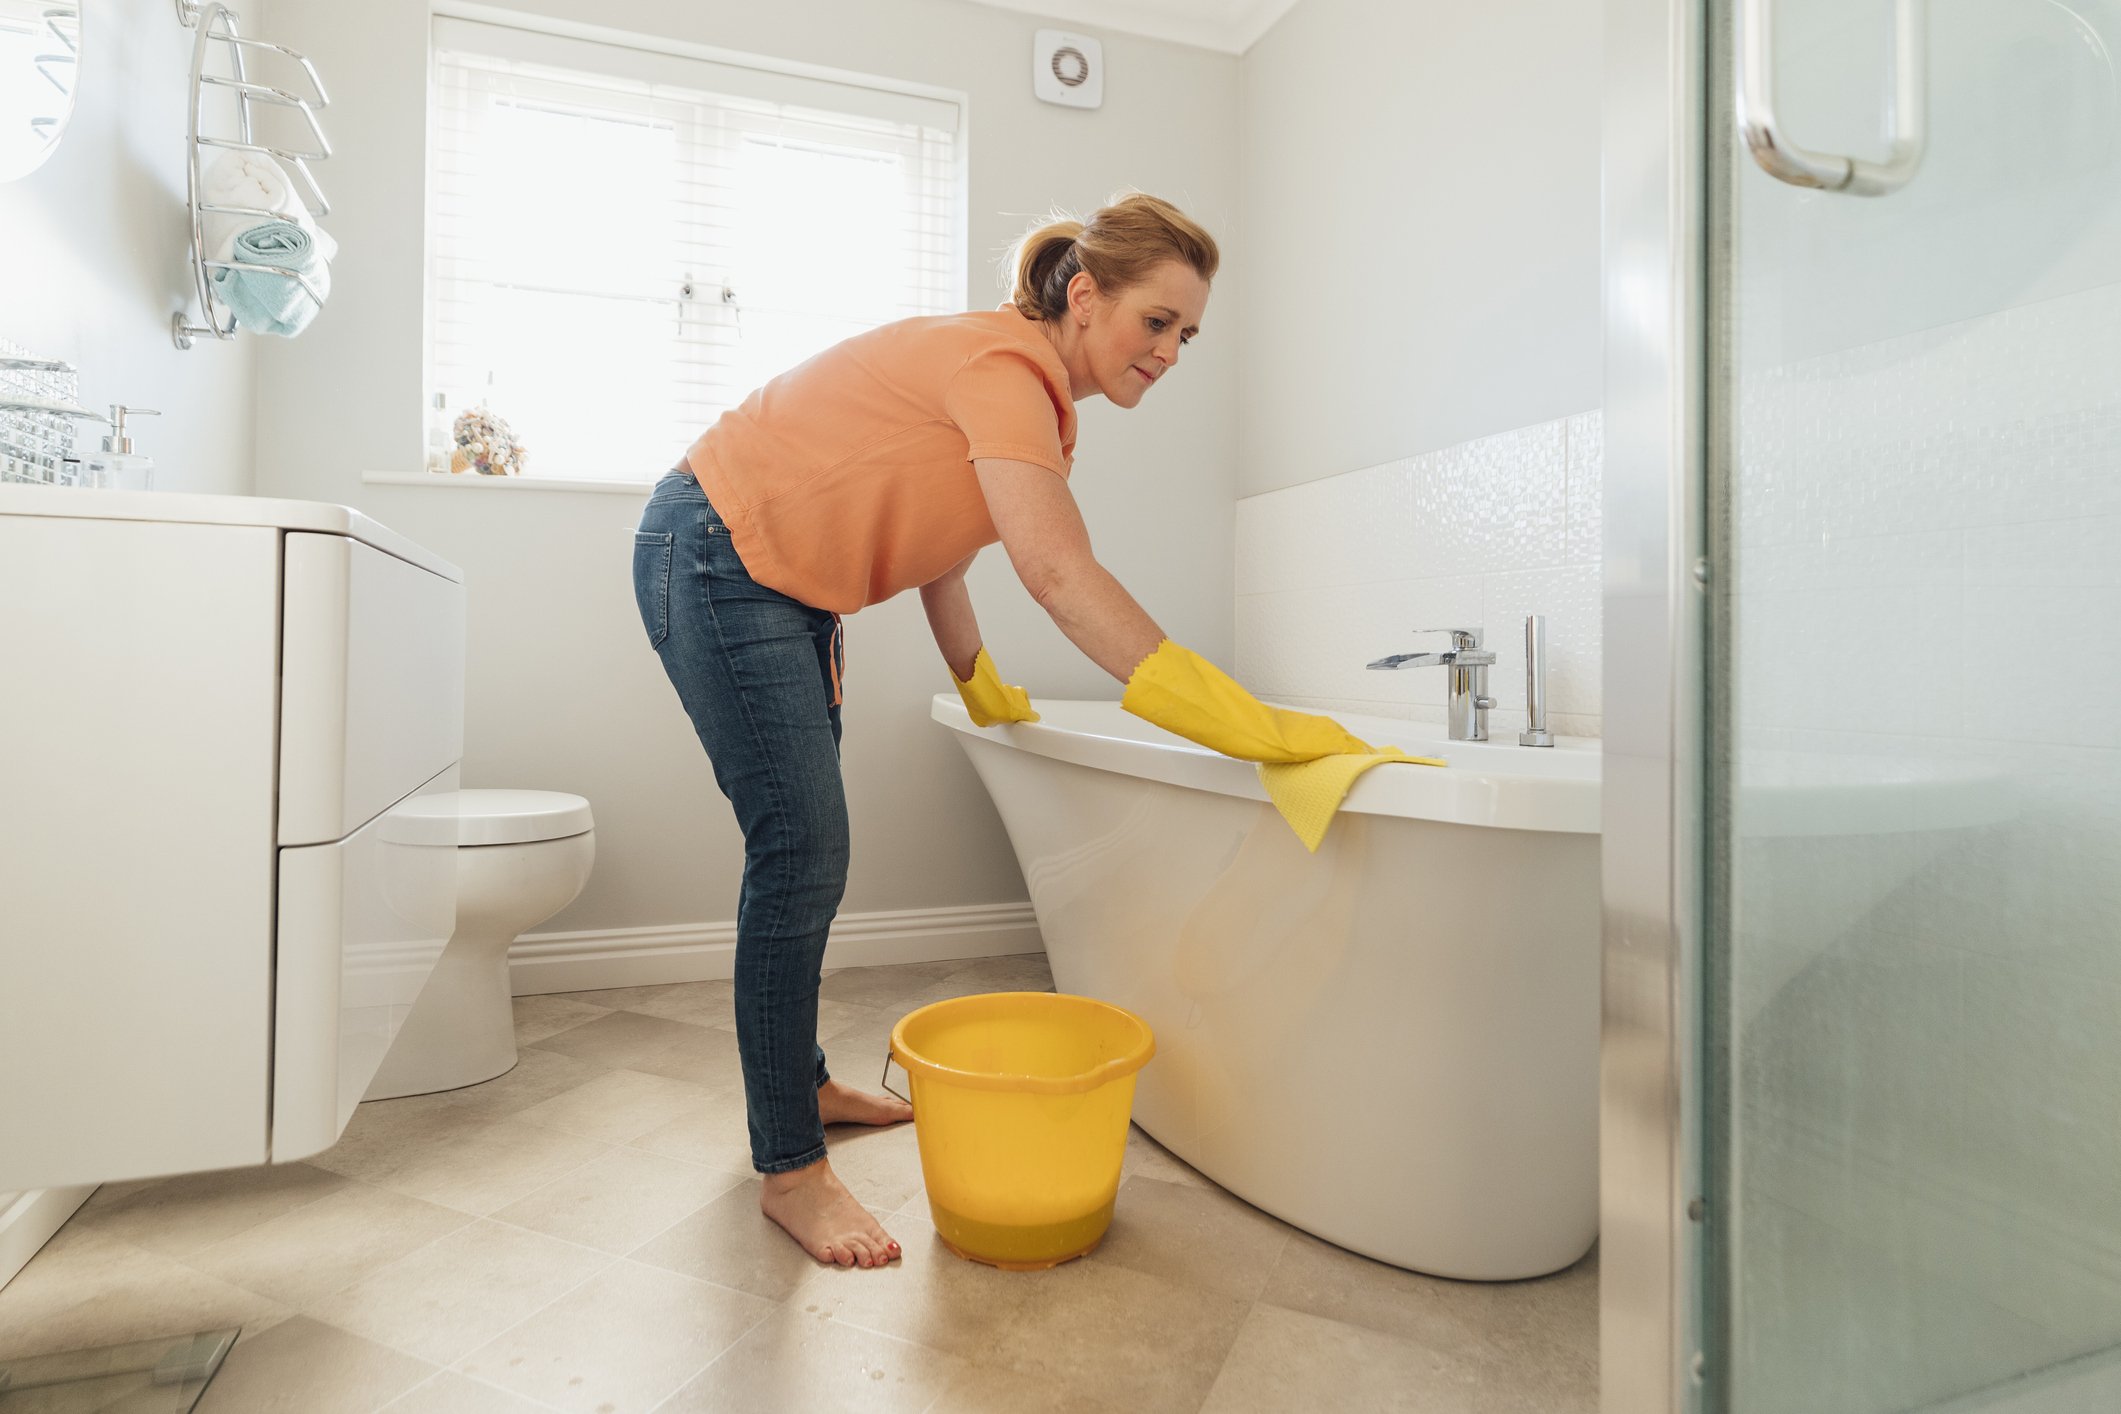 Έχει μαυρίσει η μπανιέρα σου; 2+1 εύκολοι τρόποι με σπιτικά υλικά για να την καθαρίσεις!